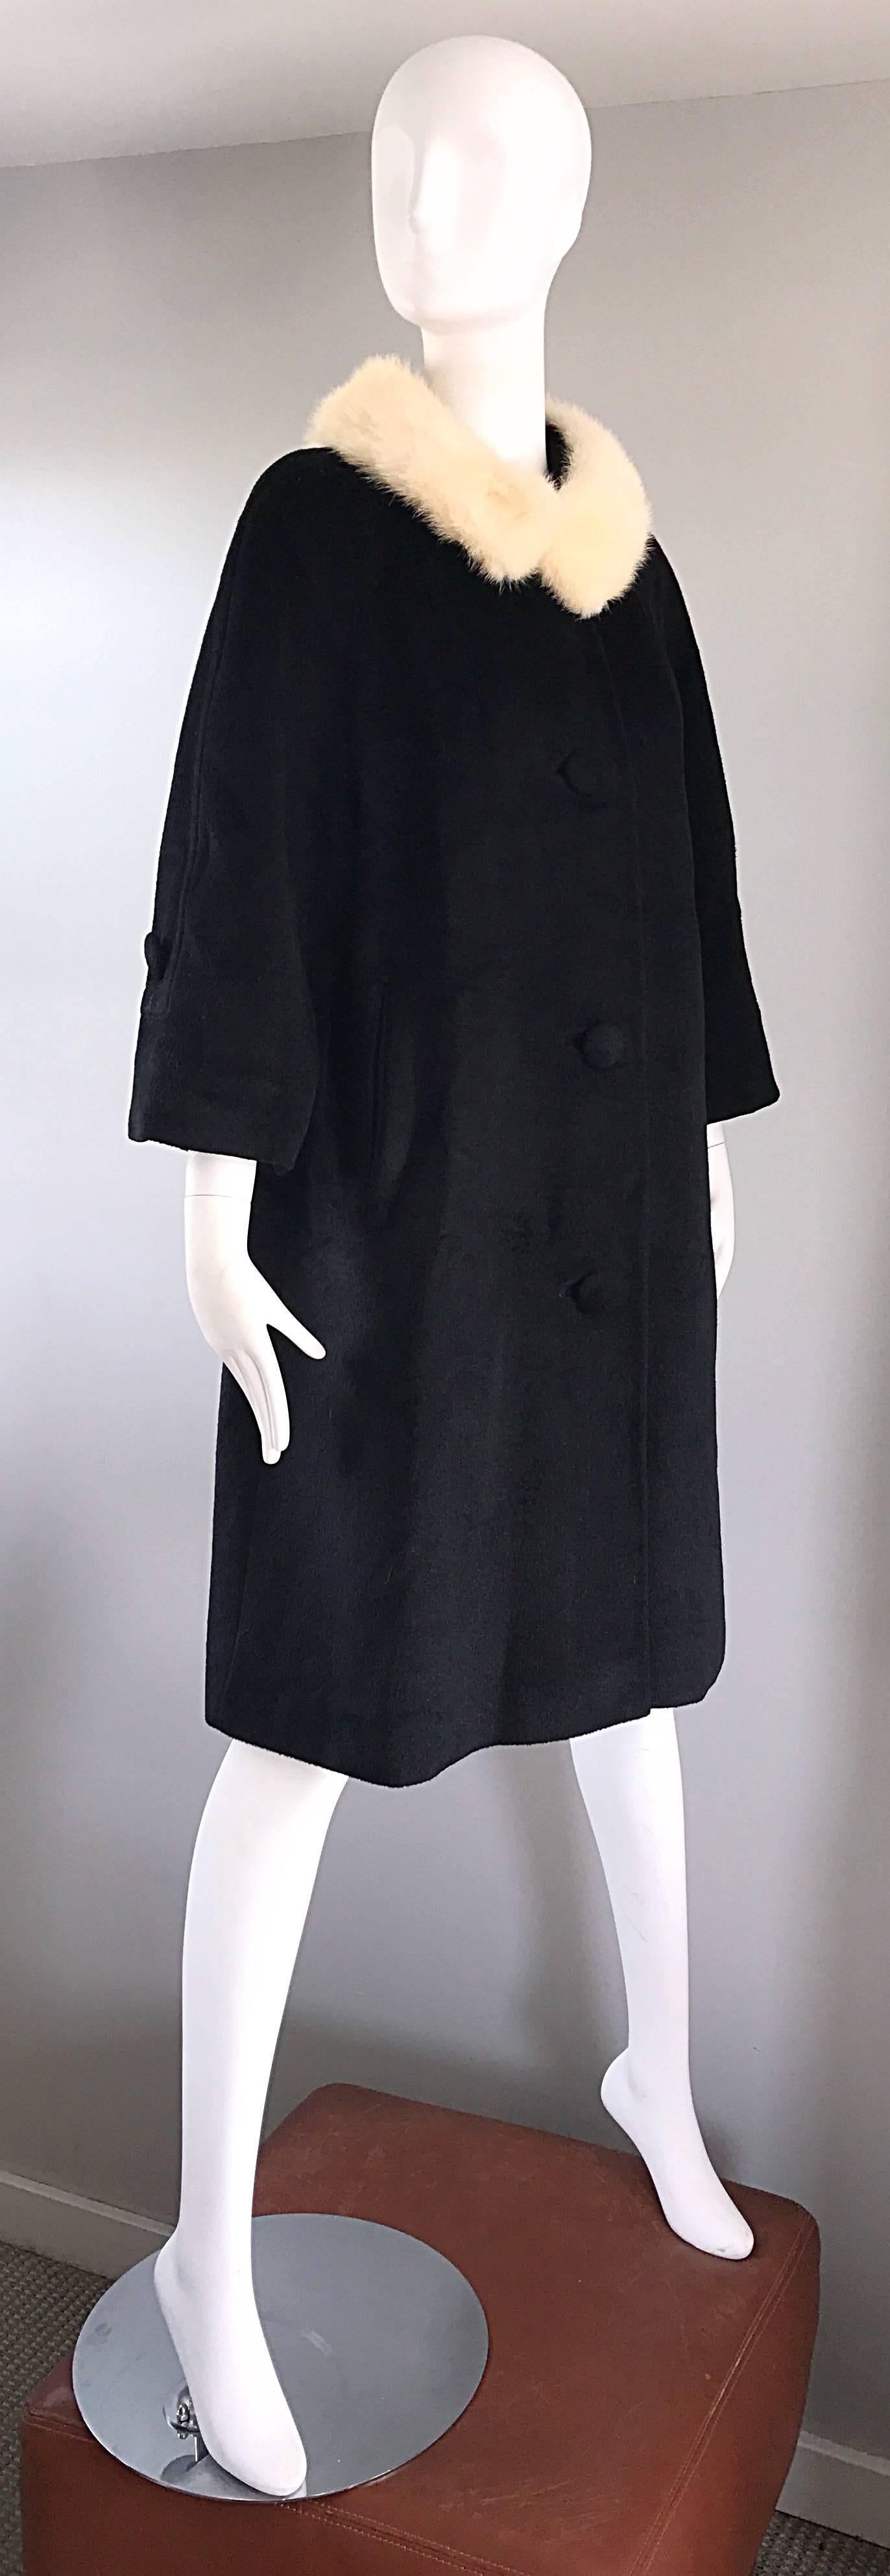 60s style coat